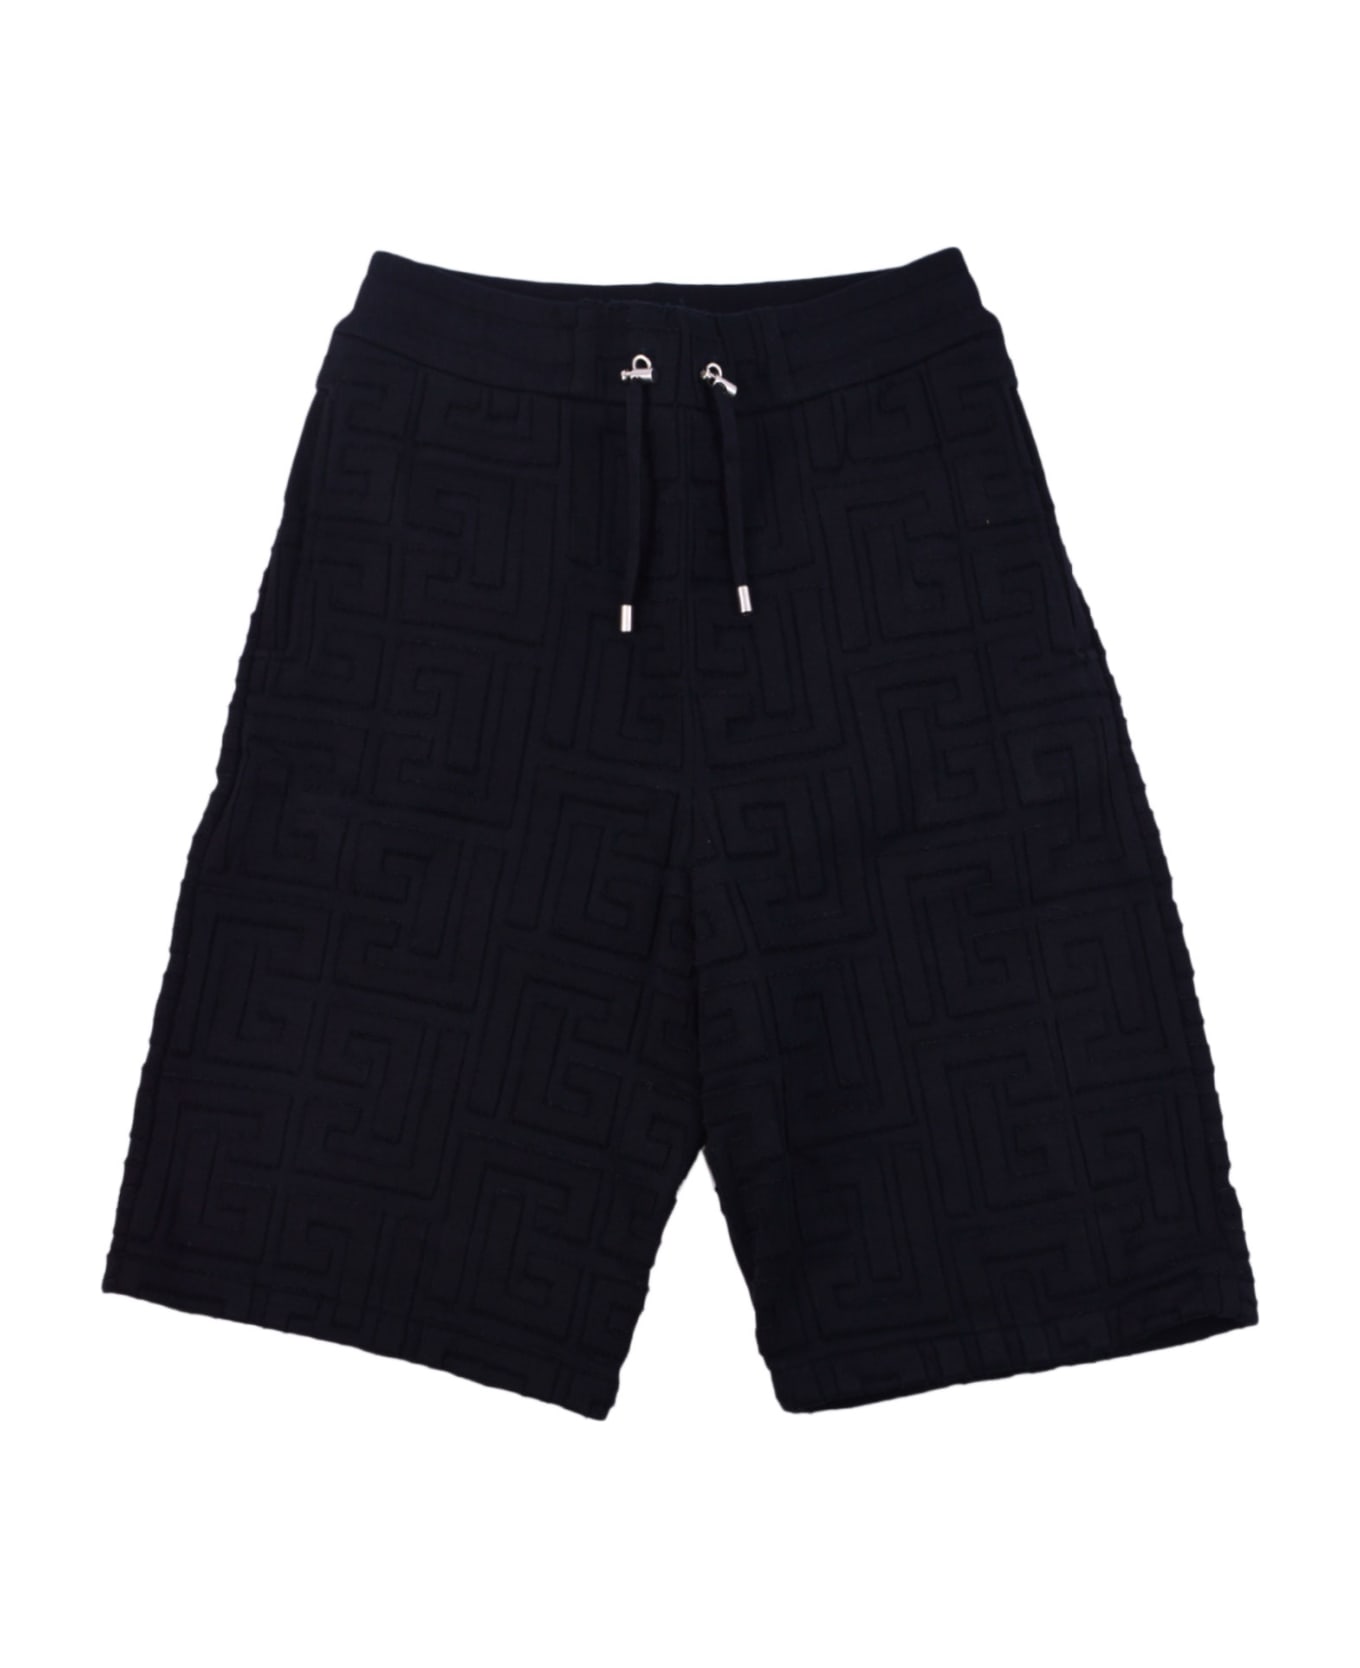 Balmain Shorts - Black